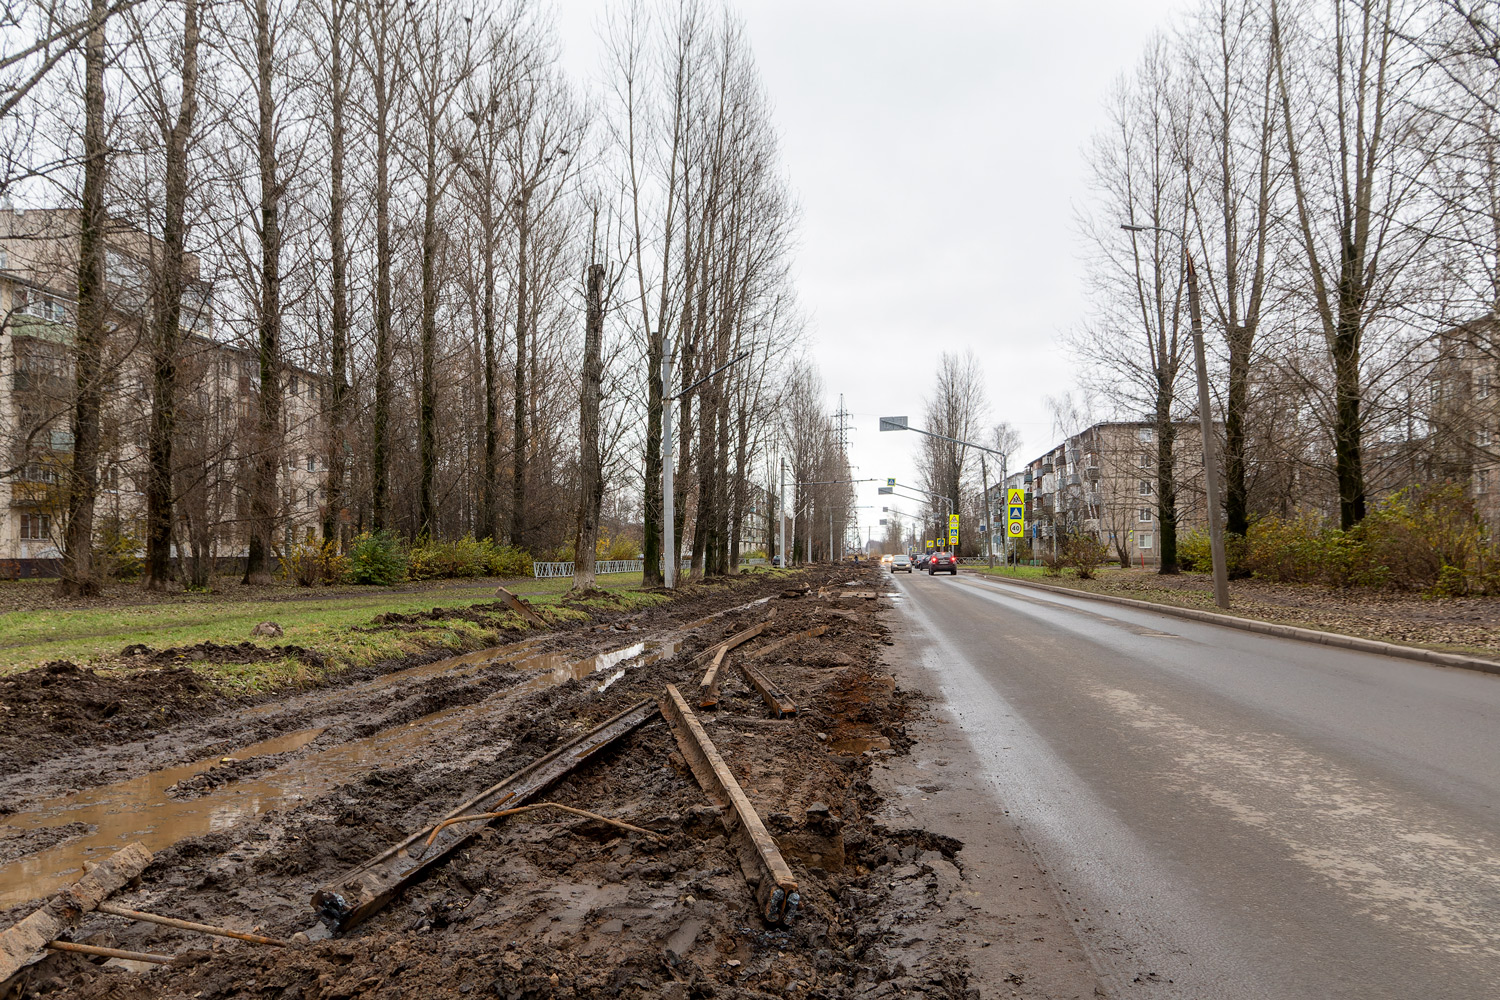 Ярославль — Реконструкция трамвайной сети в рамках концессионного соглашения. Этап №1